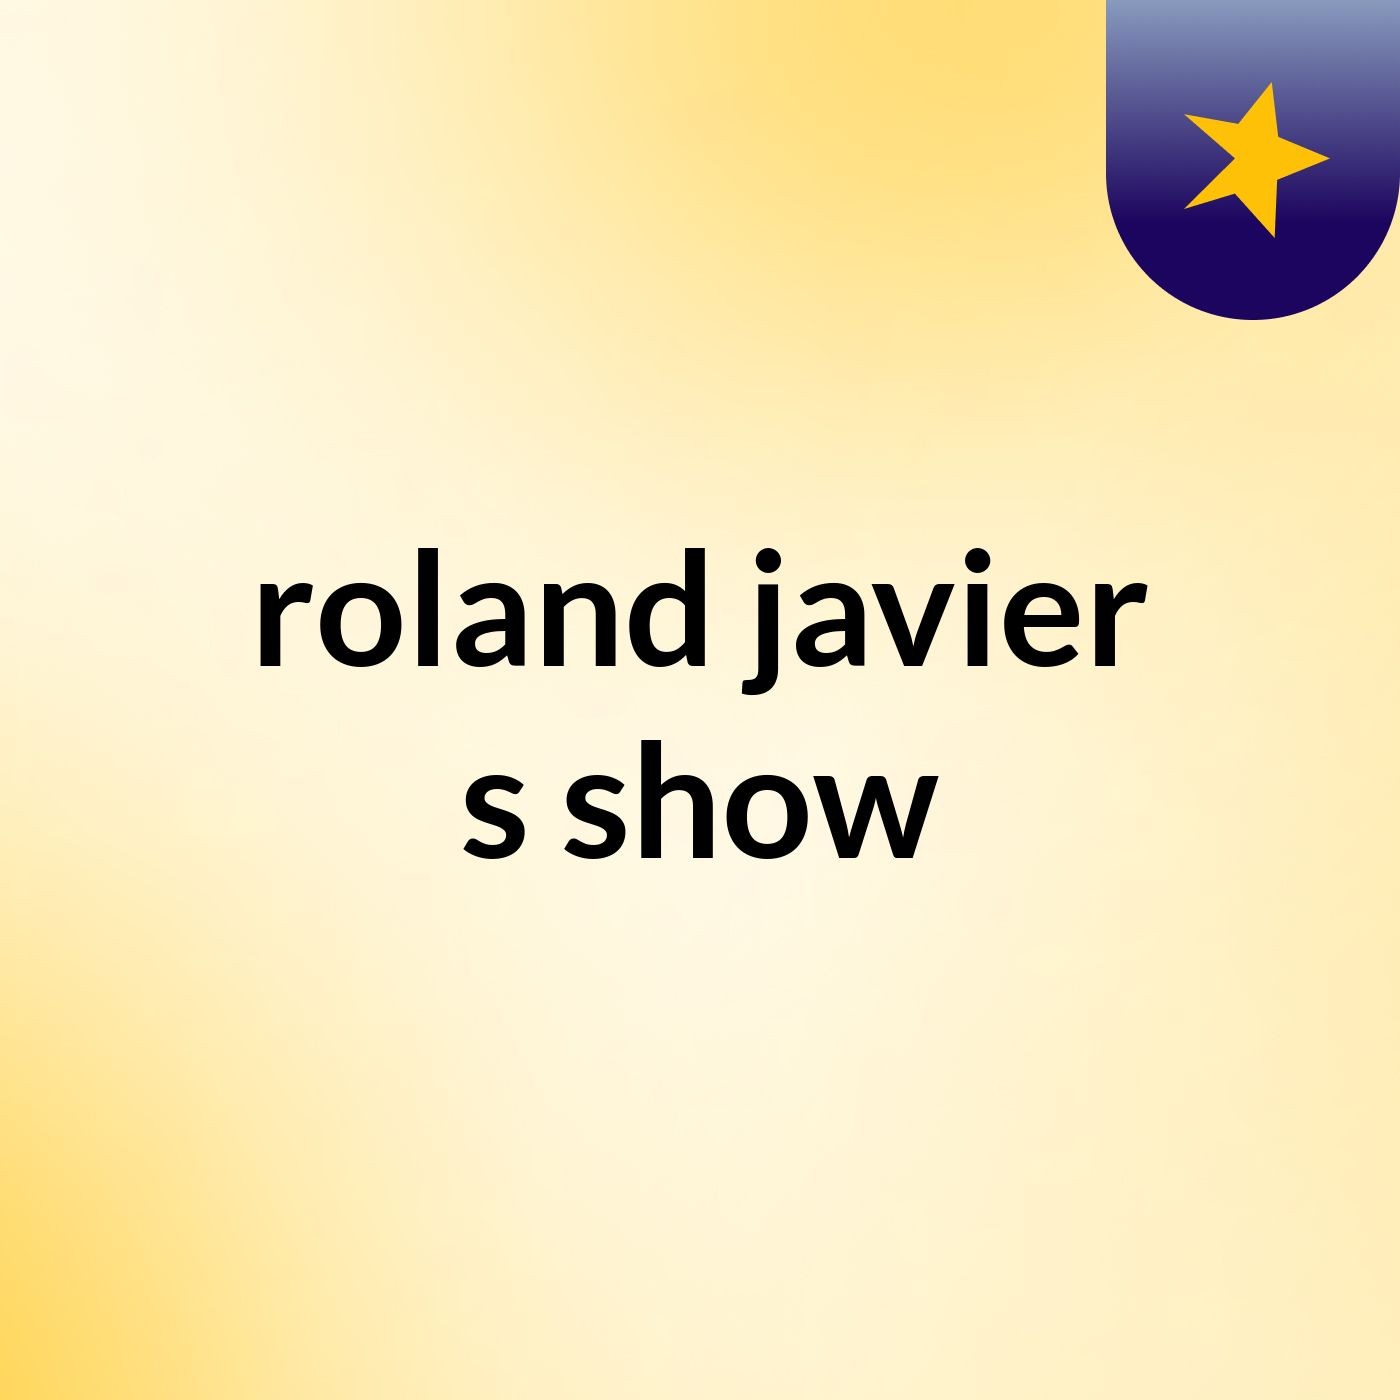 Episode 6 - roland javier's show